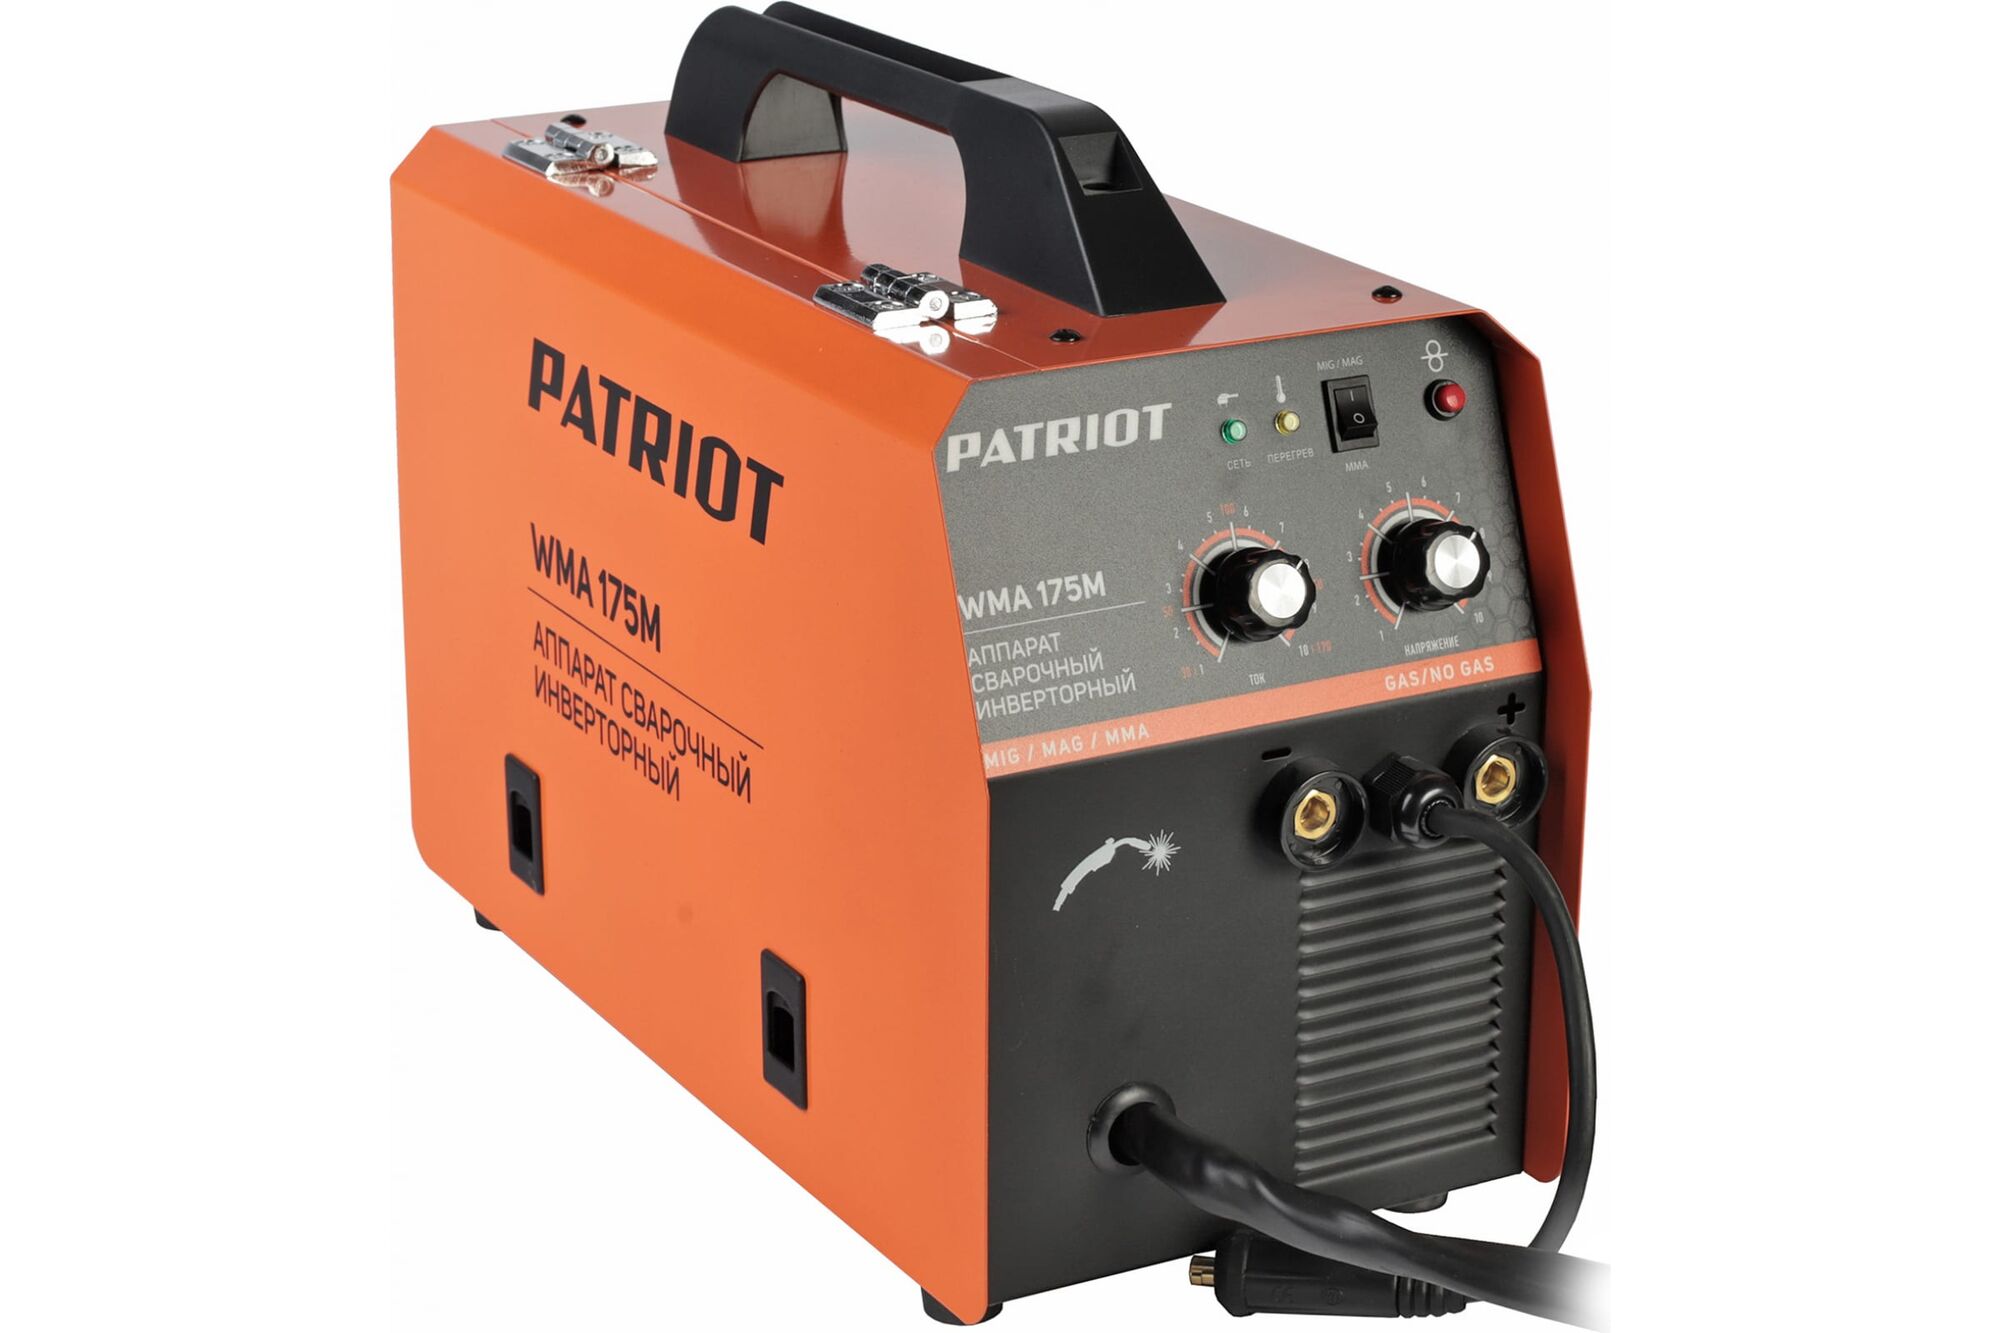 Сварочный инверторный полуавтомат PATRIOT WMA 175M MIG/MAG/MMA, полуавтоматическая сварка в среде 605302150 Patriot 7